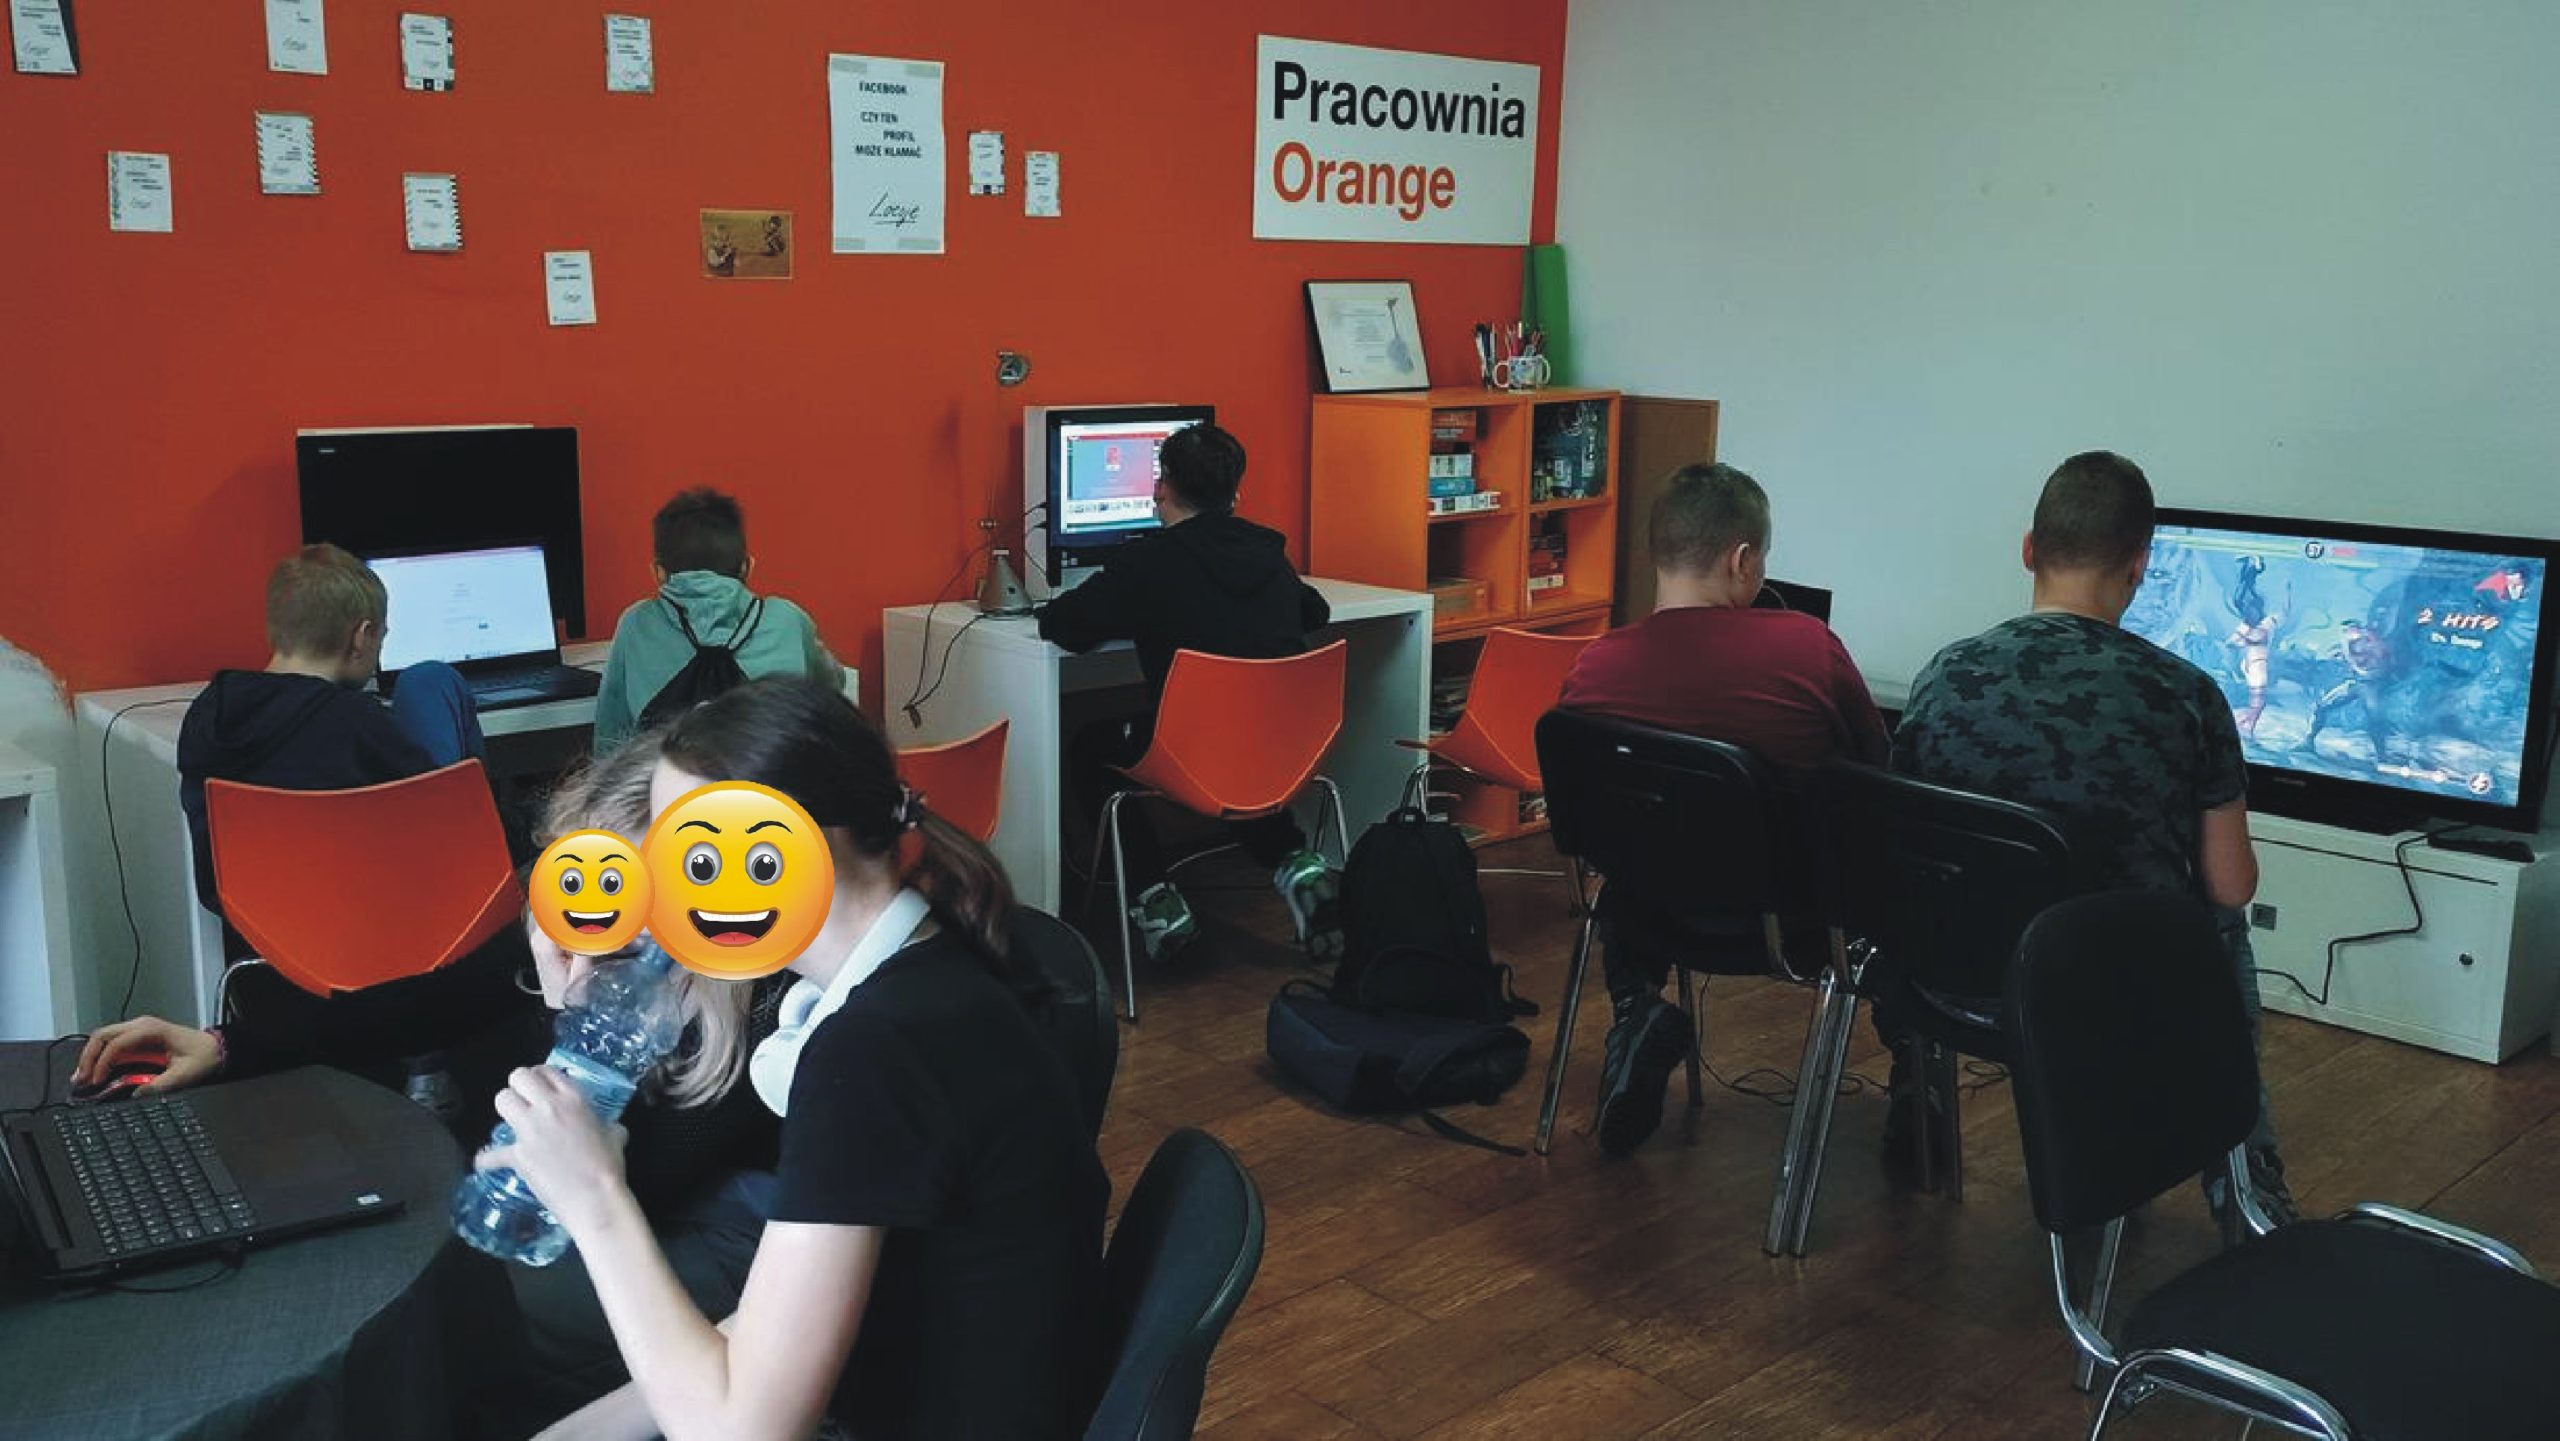 zdjęcie z wnętrza pracowni orange, młodzi ludzie siedzą przy komputerach, dójka starszych chłopaków gra na playstation